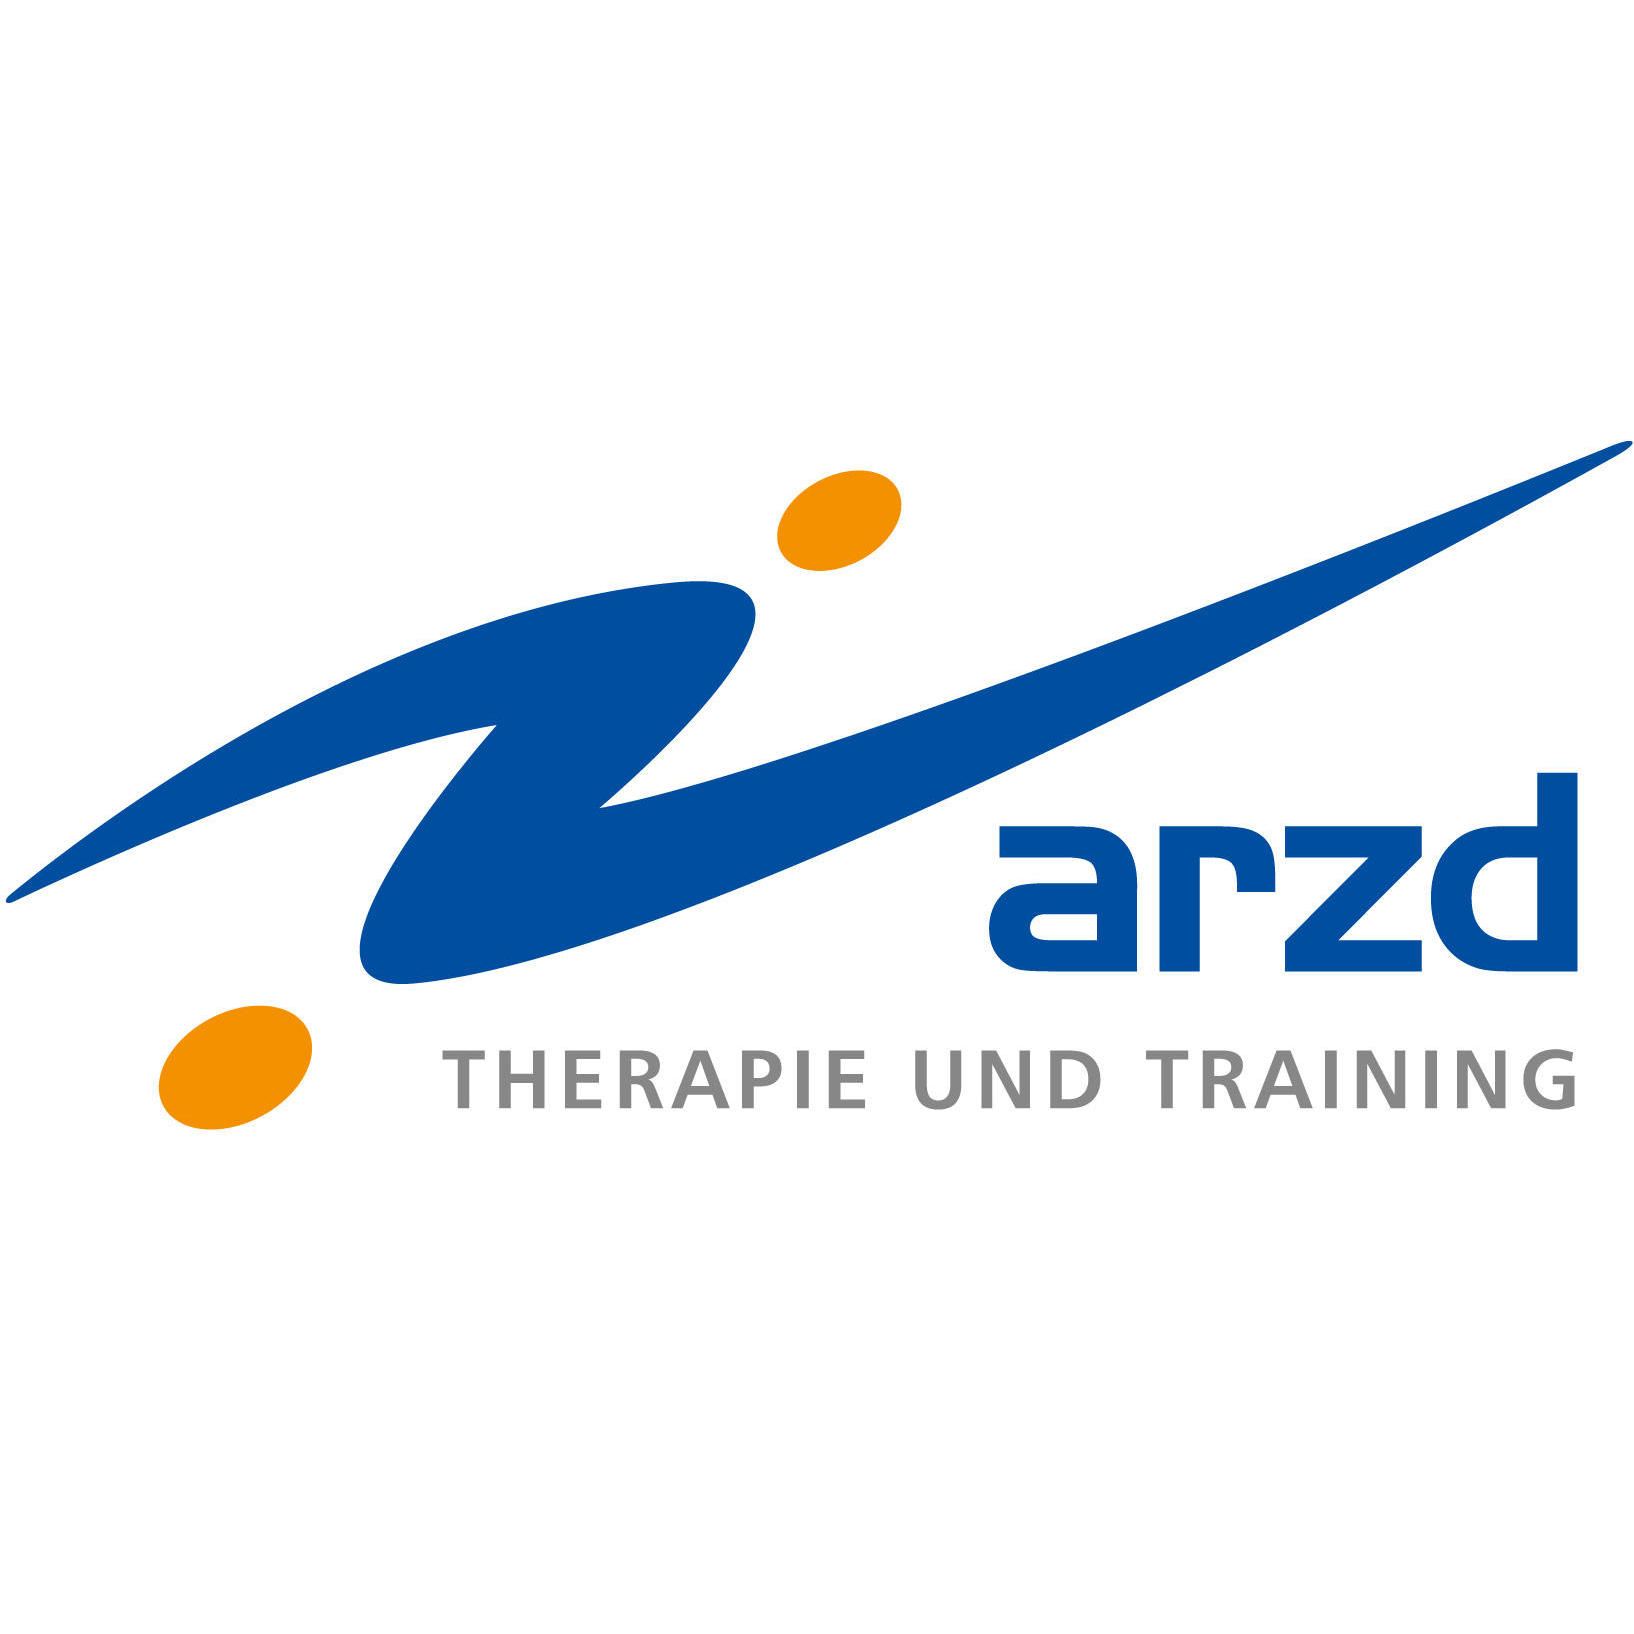 arzd Therapie und Training Heininger & Kalinowski GbR in Duisburg - Logo